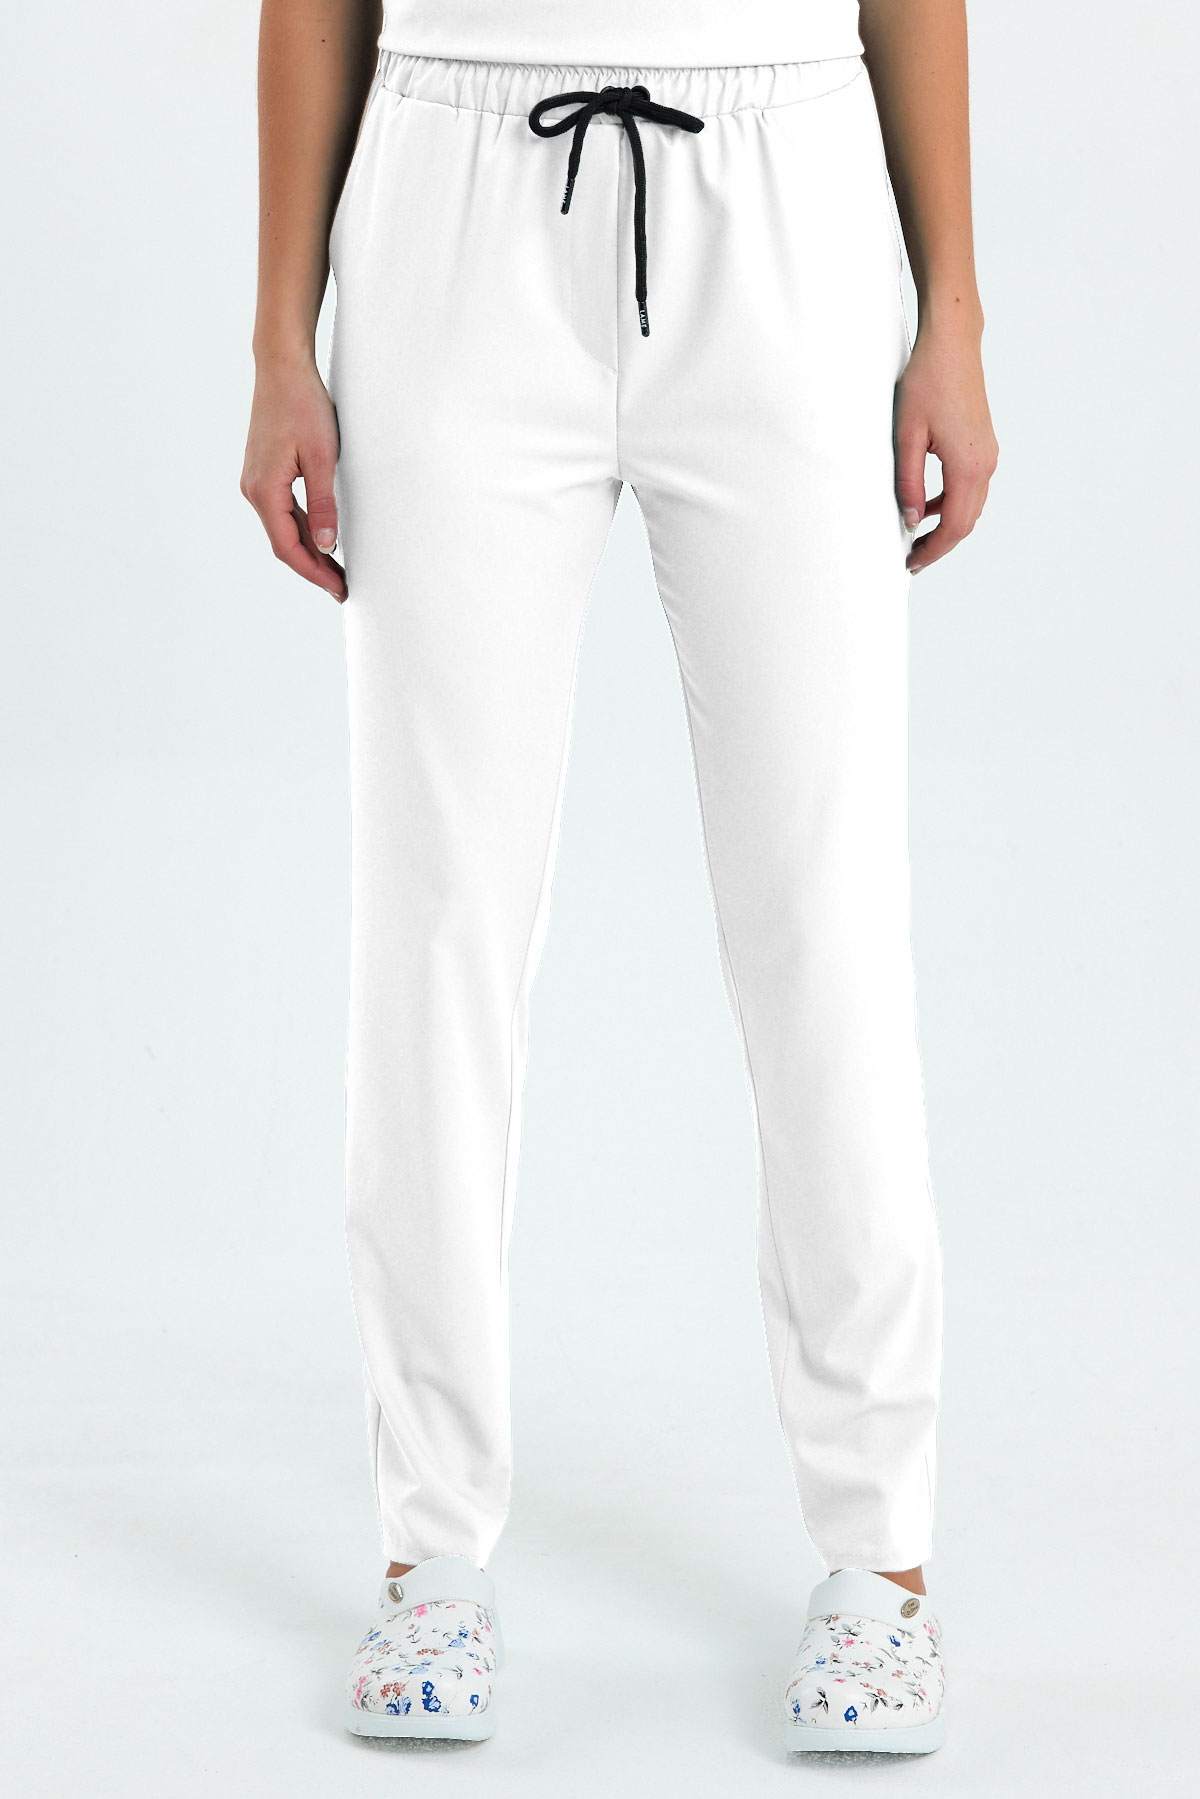 LAME 2005 Premium Likralı Beyaz Scrubs, Hemşire Forması Klasik Paça Pantolon